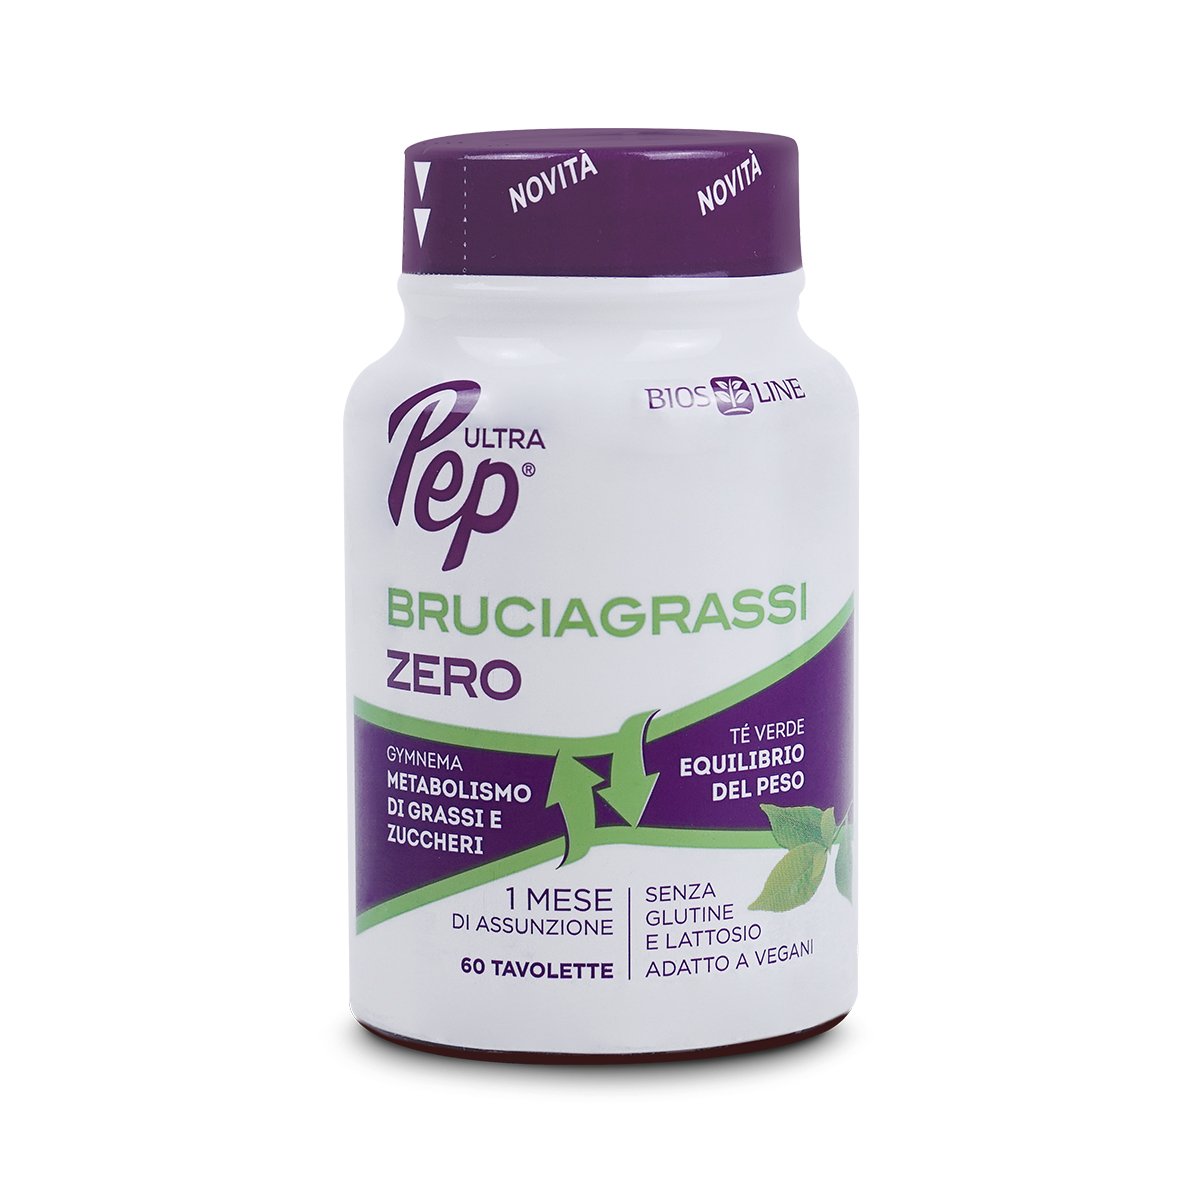 Ultra Pep® Tavolette Bruciagrassi ZERO - BIOS LINE Stimola il metabolismo svolge un'azione tonica e di sostegno e favorisce la perdita di peso. 60 tavolette